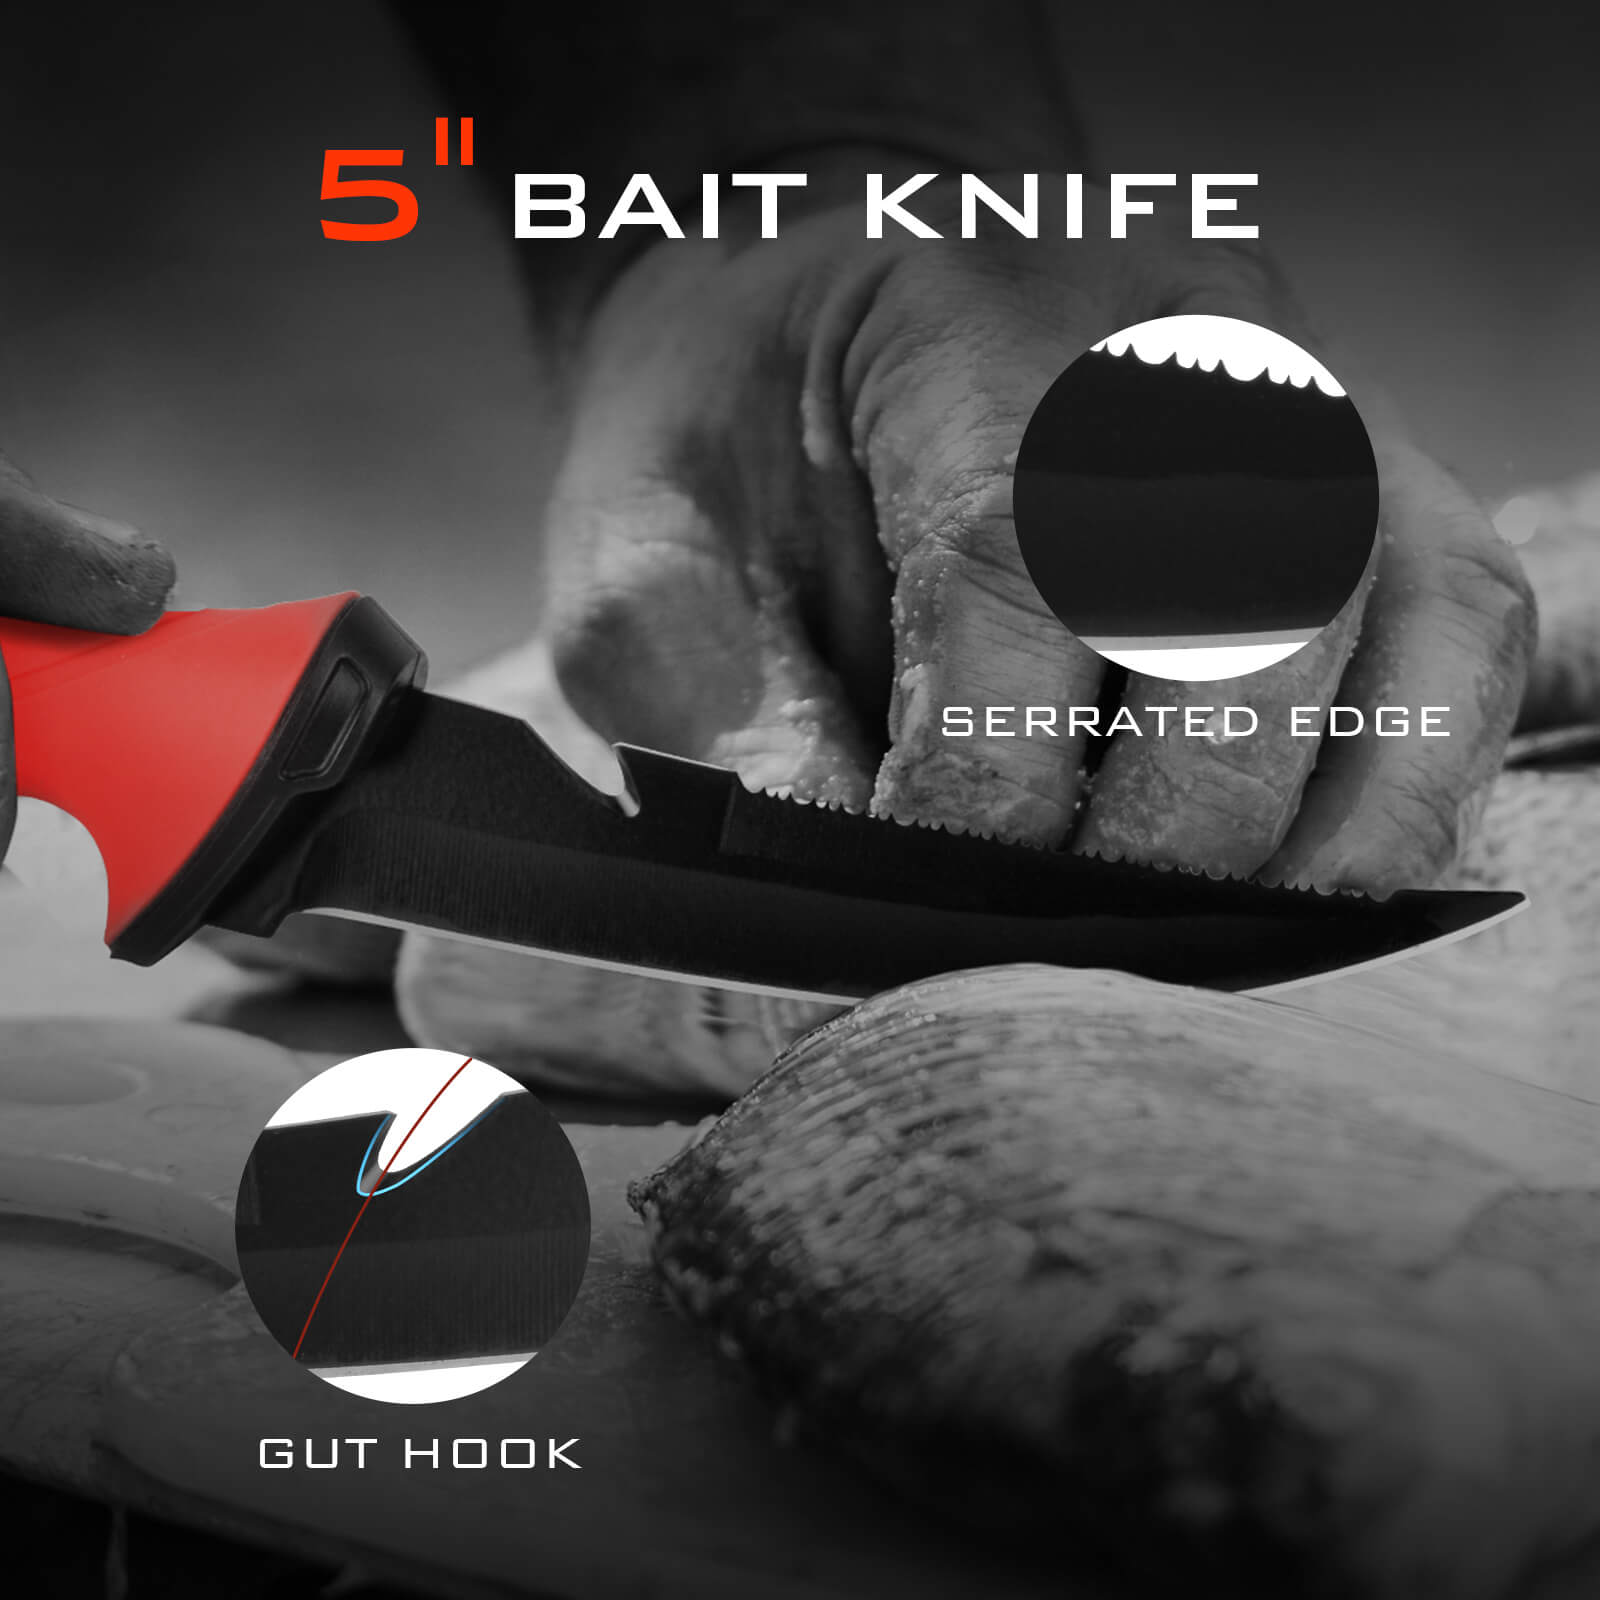 KastKing Lithium-Ion Electric Fillet Knife, 2 Blades